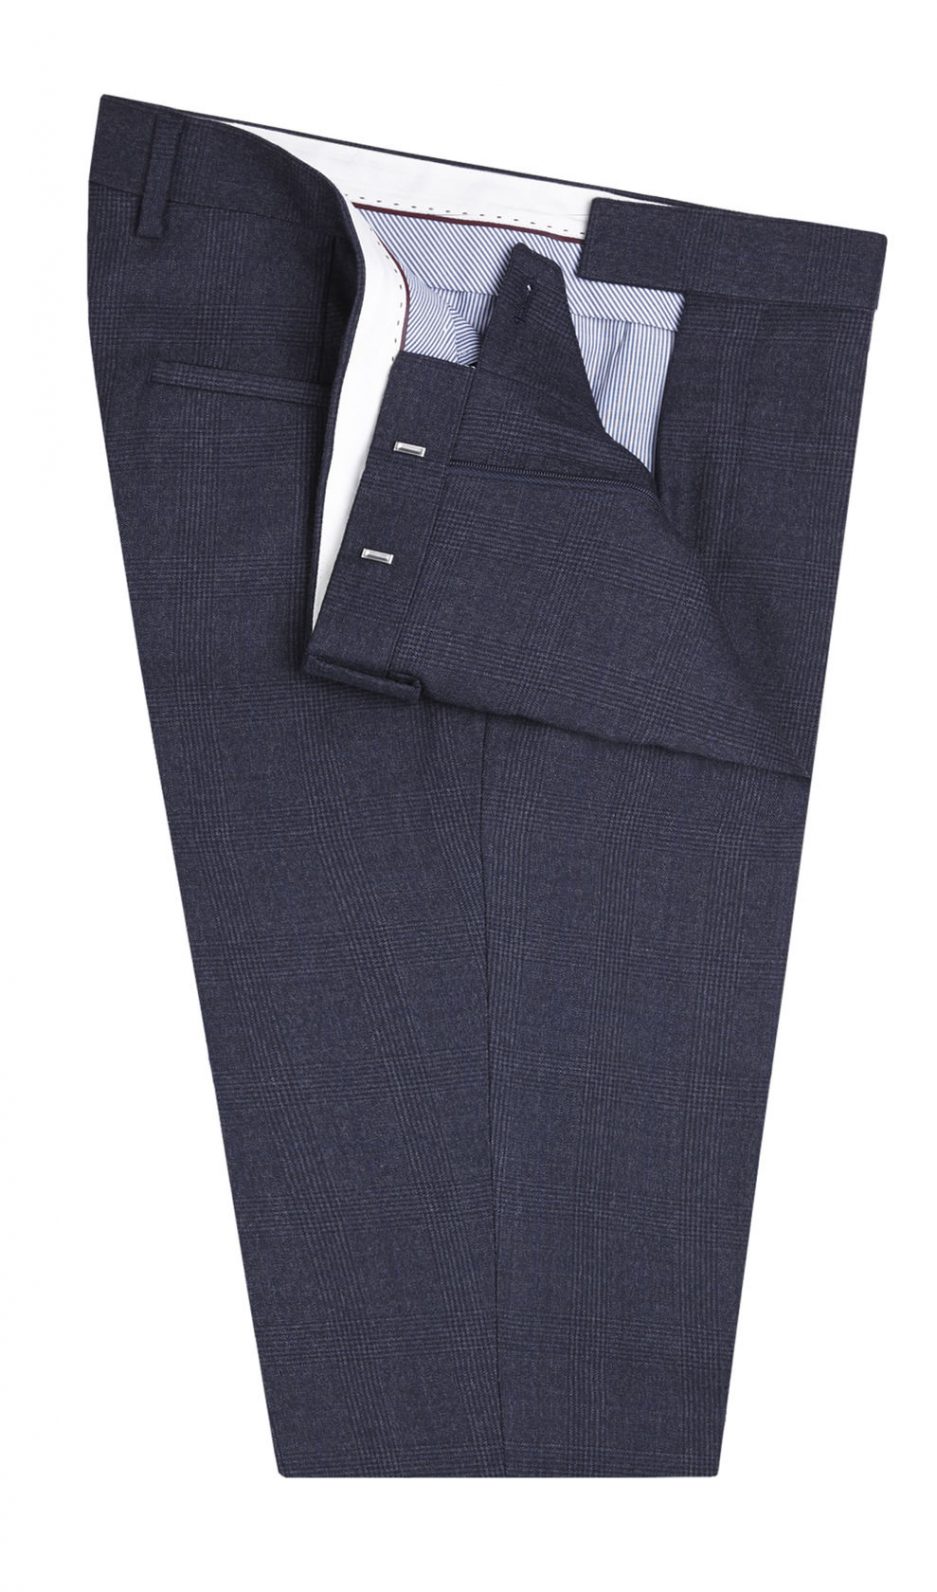 Shop mens dark grey cotton suit trouser, build customized suit trouser online. Lattest design & style